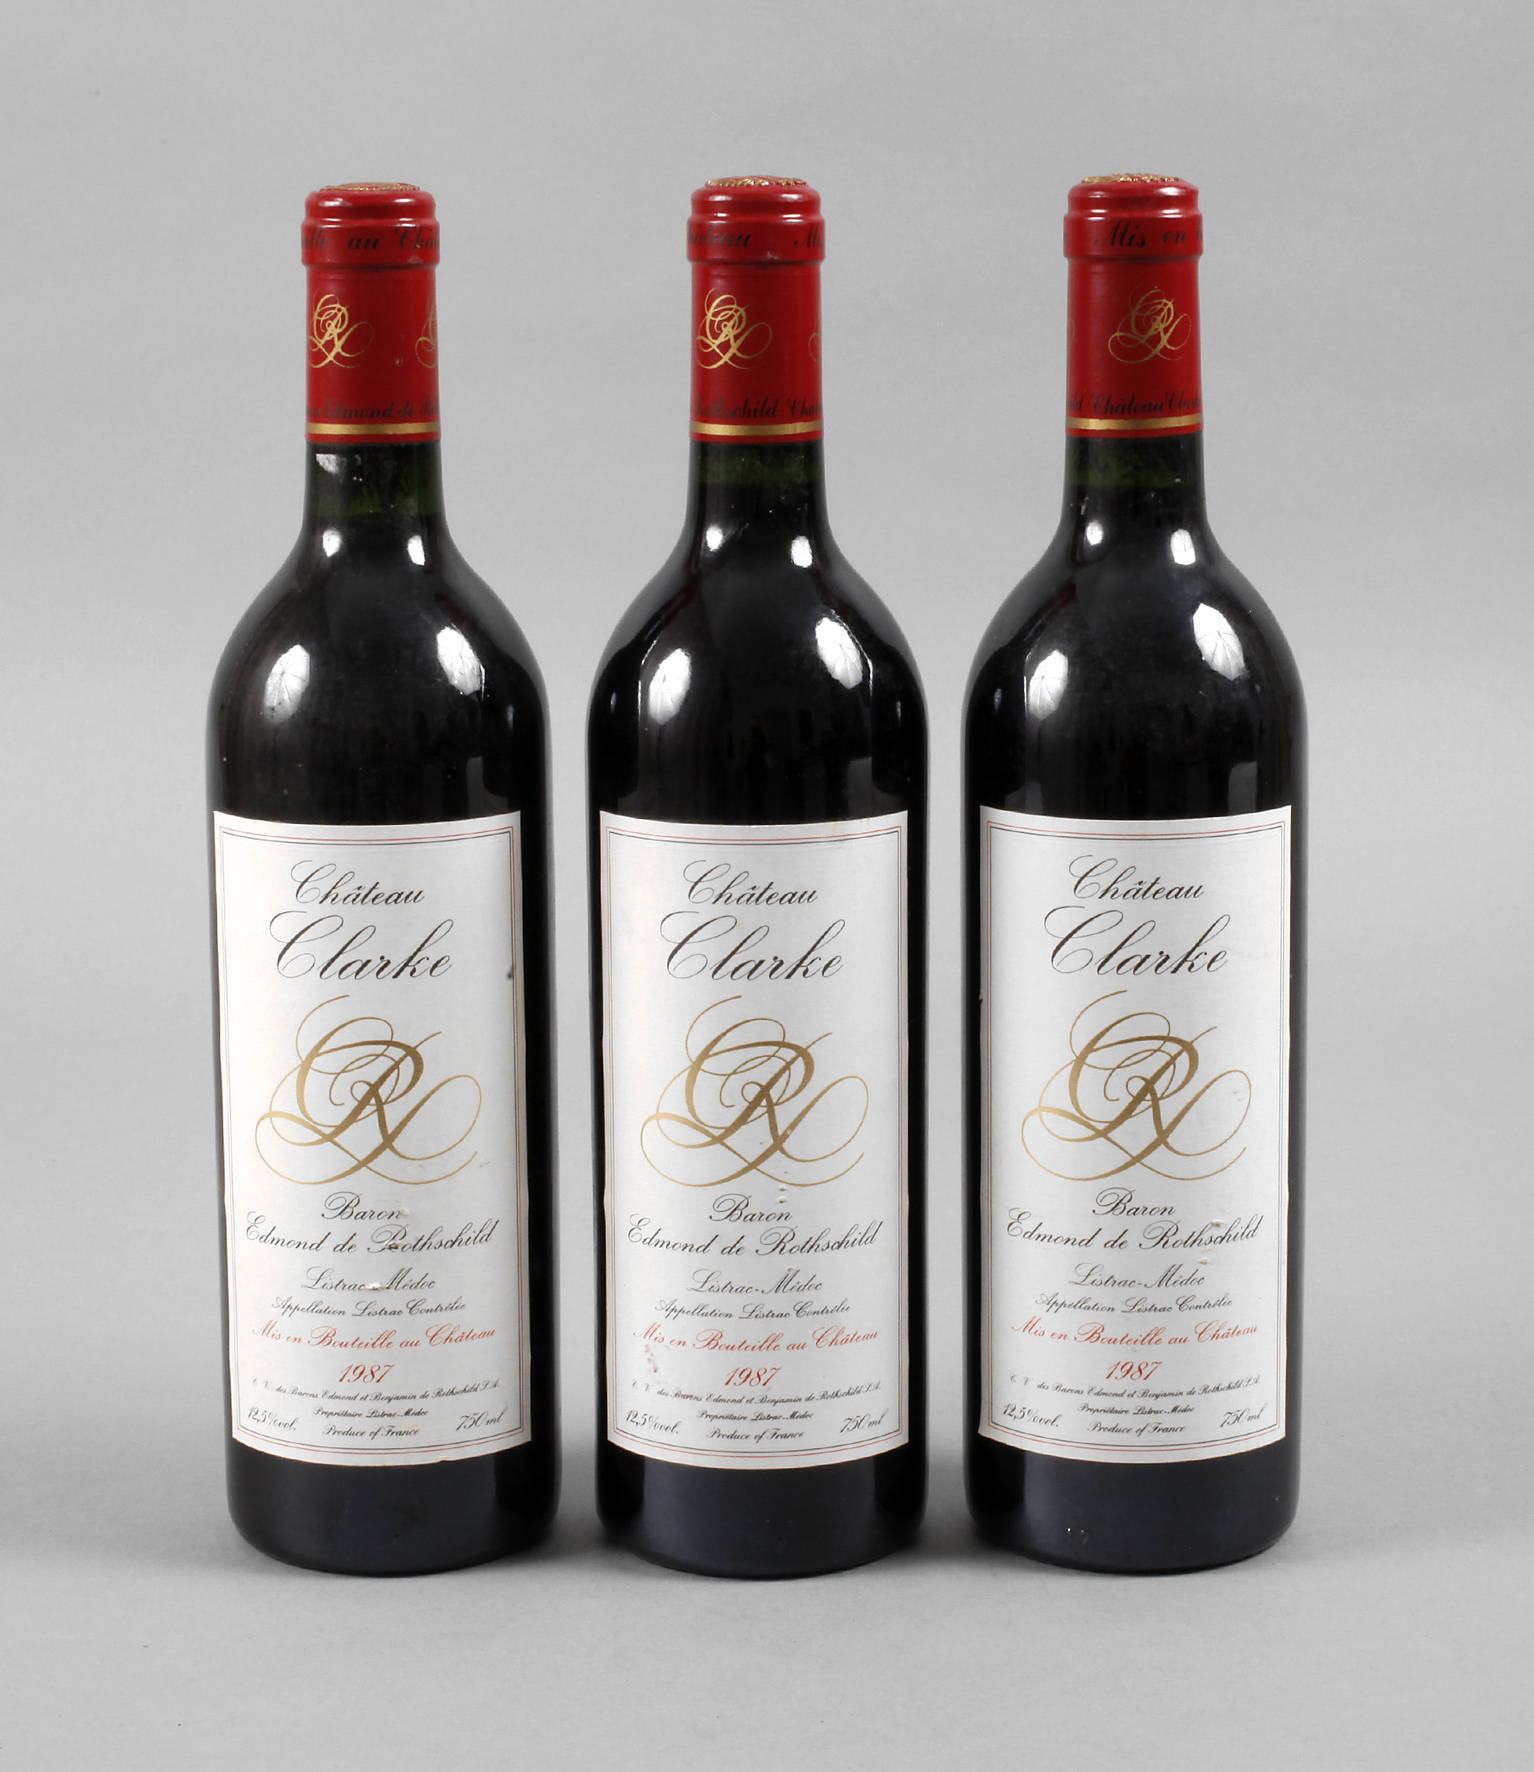 Drei Flaschen Rotwein